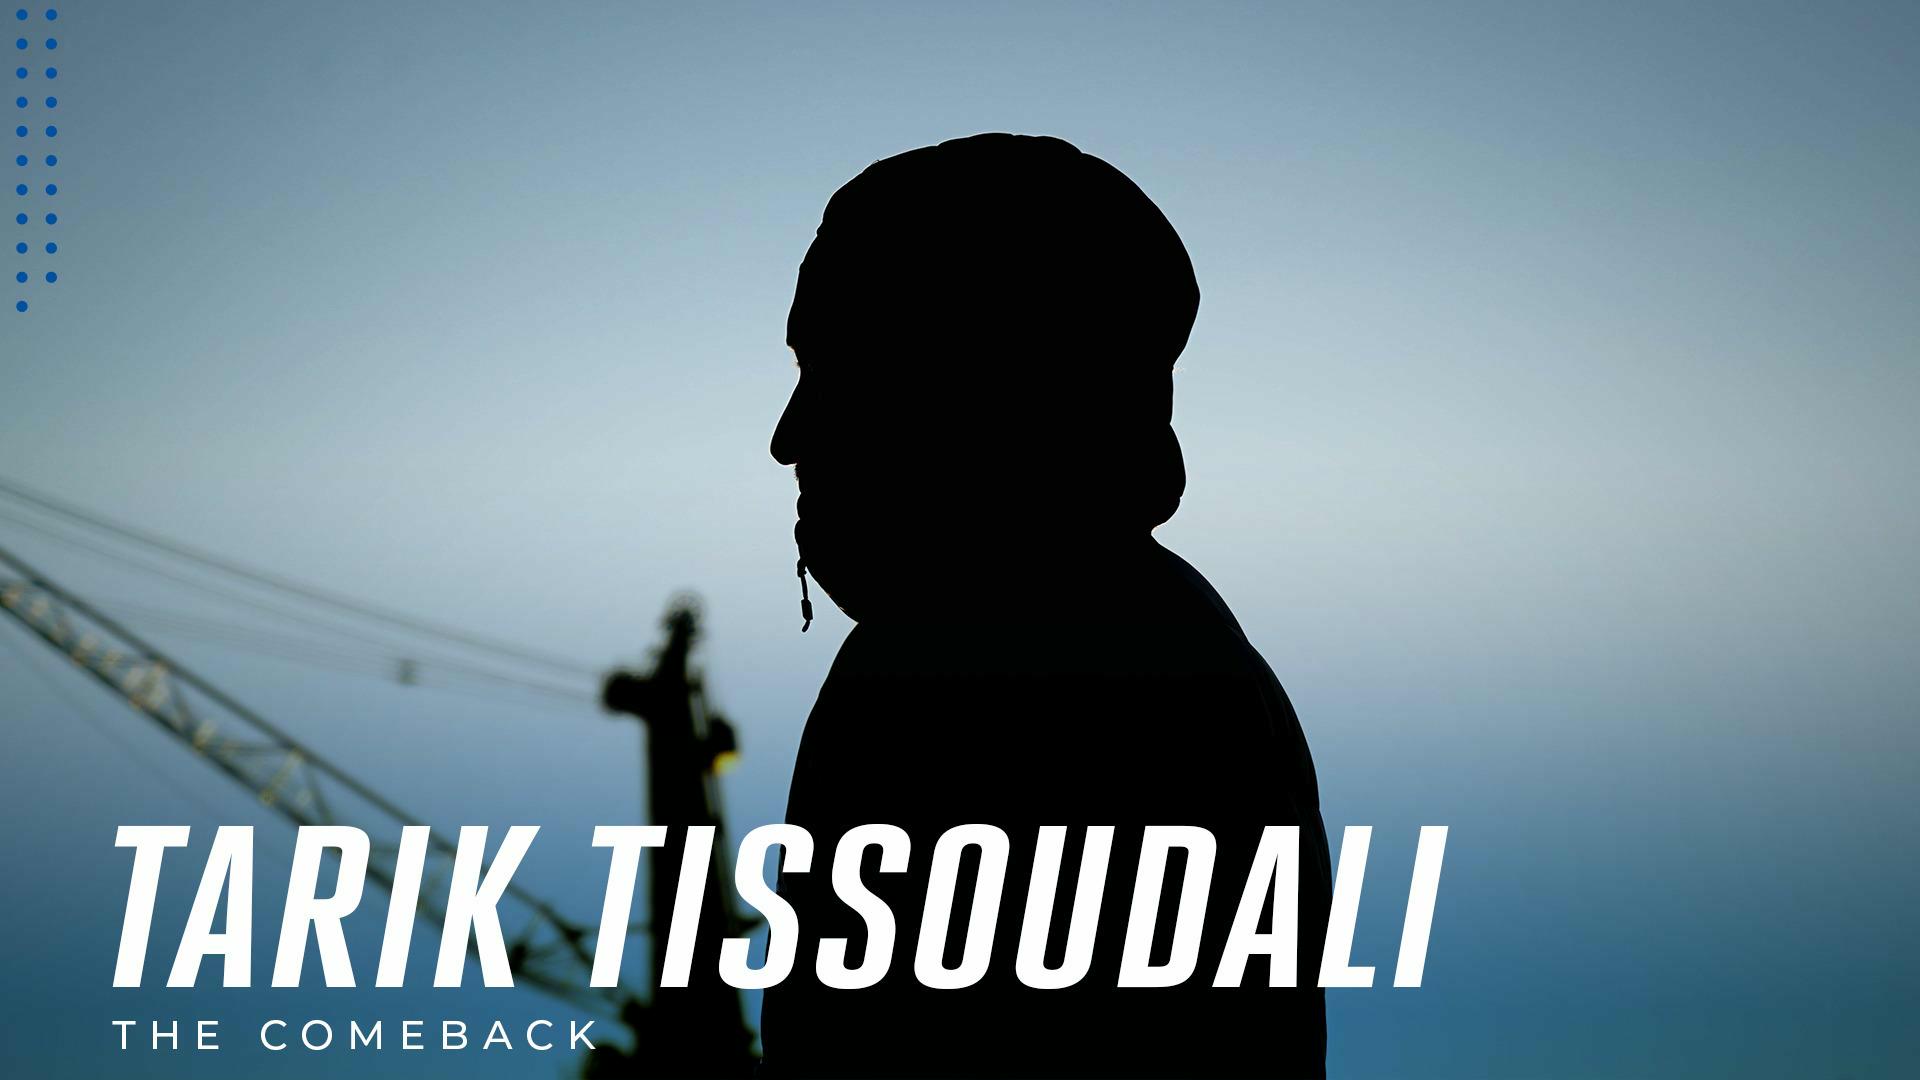 Tarik Tissoudali is klaar voor zijn comeback